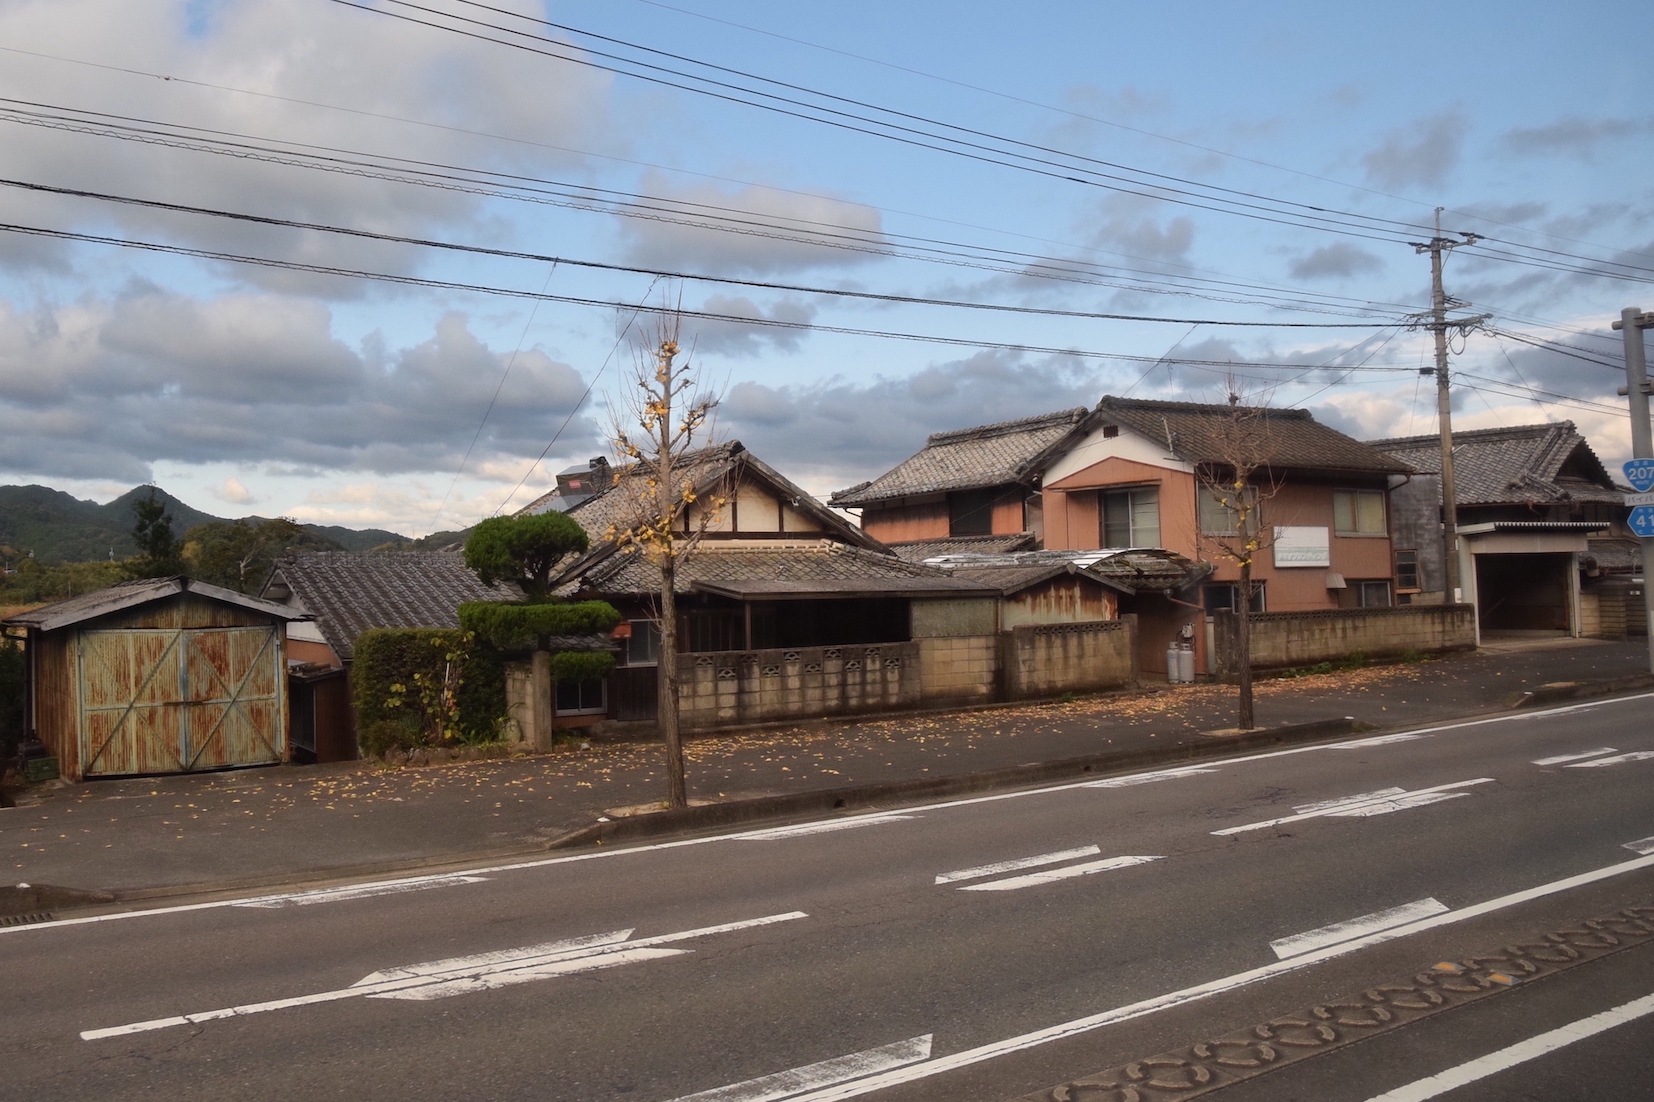 บ้านร้าง บ้านเก่า ในญี่ปุ่น